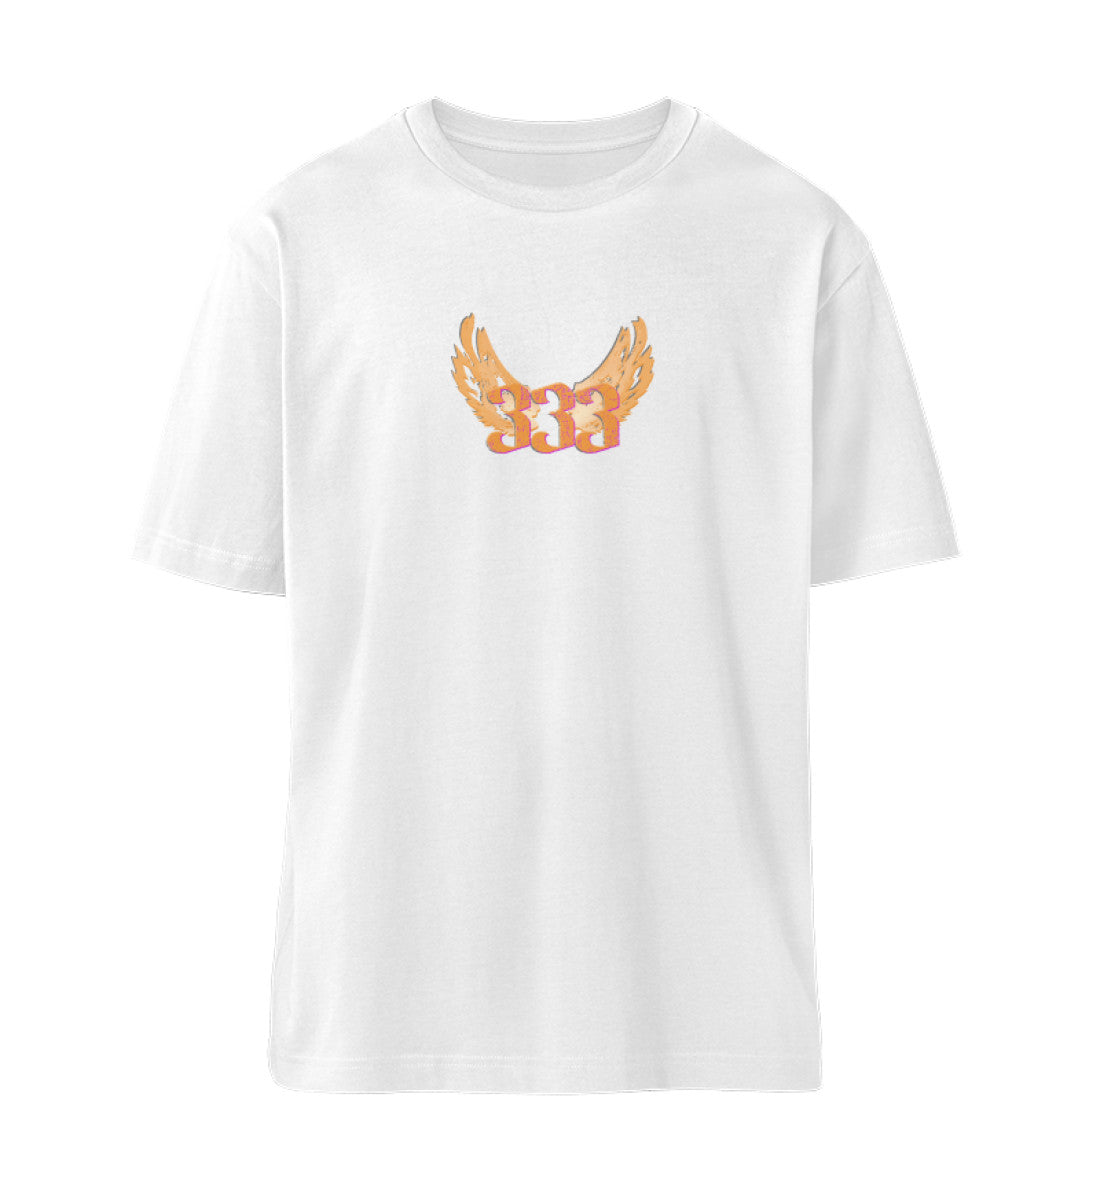 Weißes T-Shirt Unisex Relaxed Fit für Frauen und Männer bedruckt mit dem Design der Roger Rockawoo Kollektion Engelszahl 333